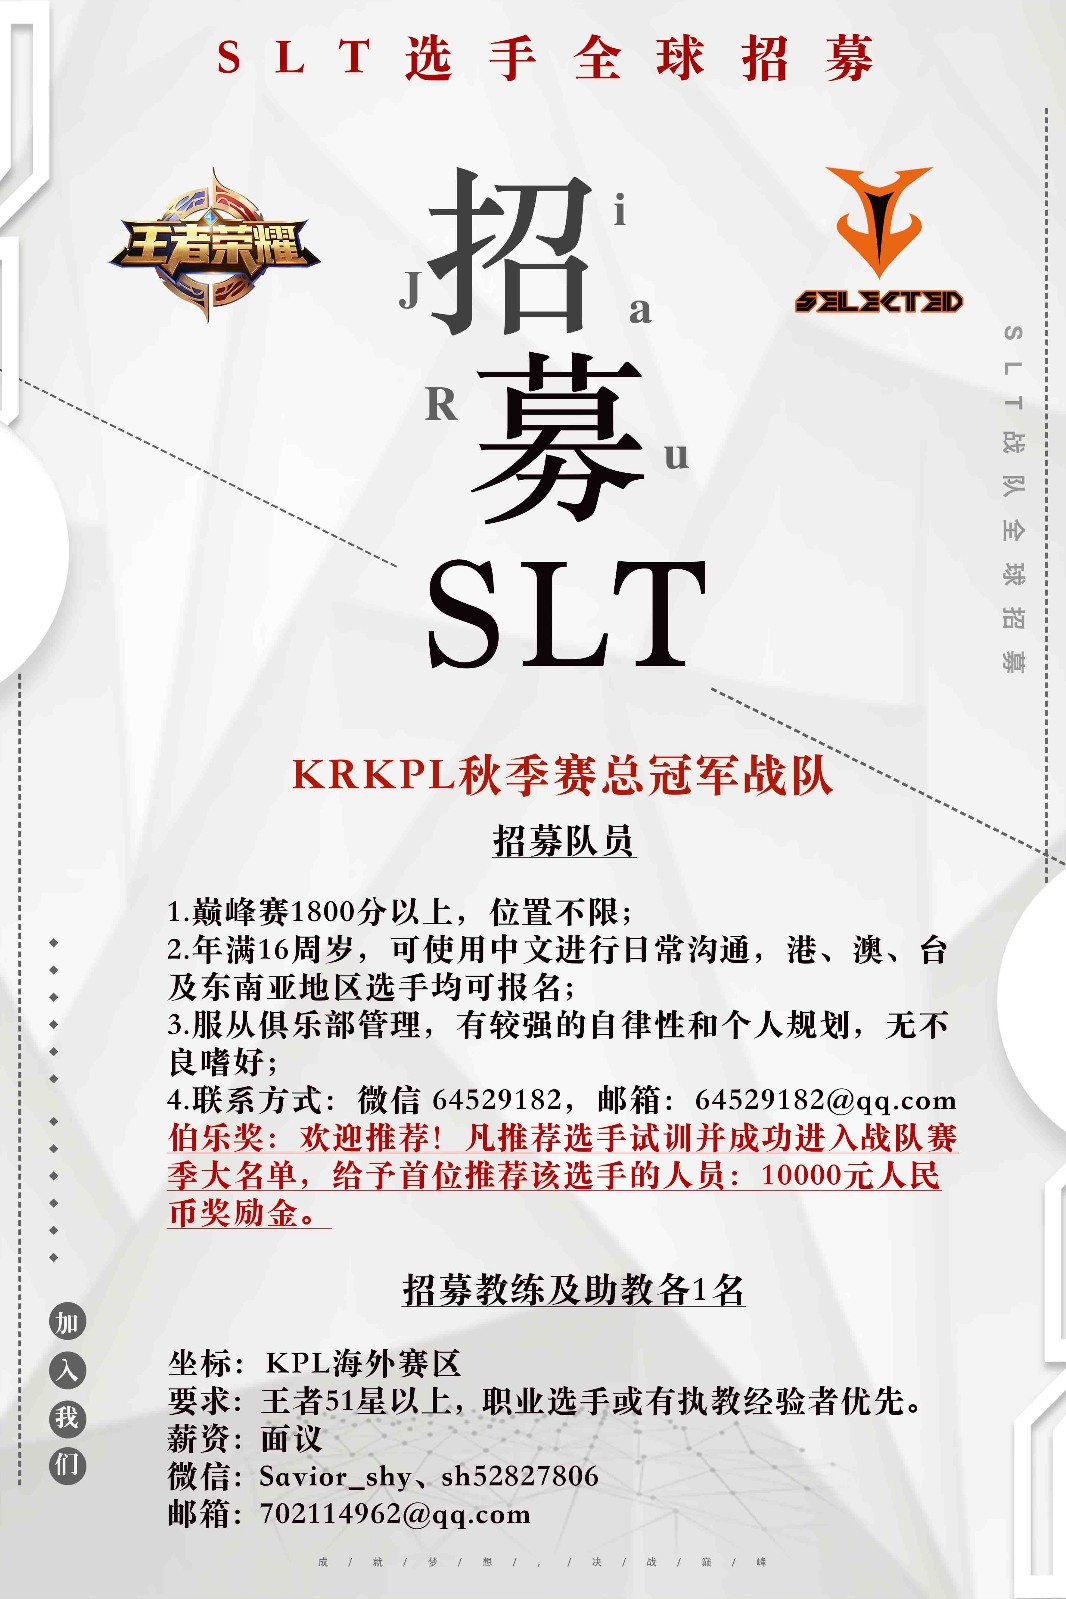 [选手招募] KRKPL秋季赛总冠军SLT战队正在招募选手